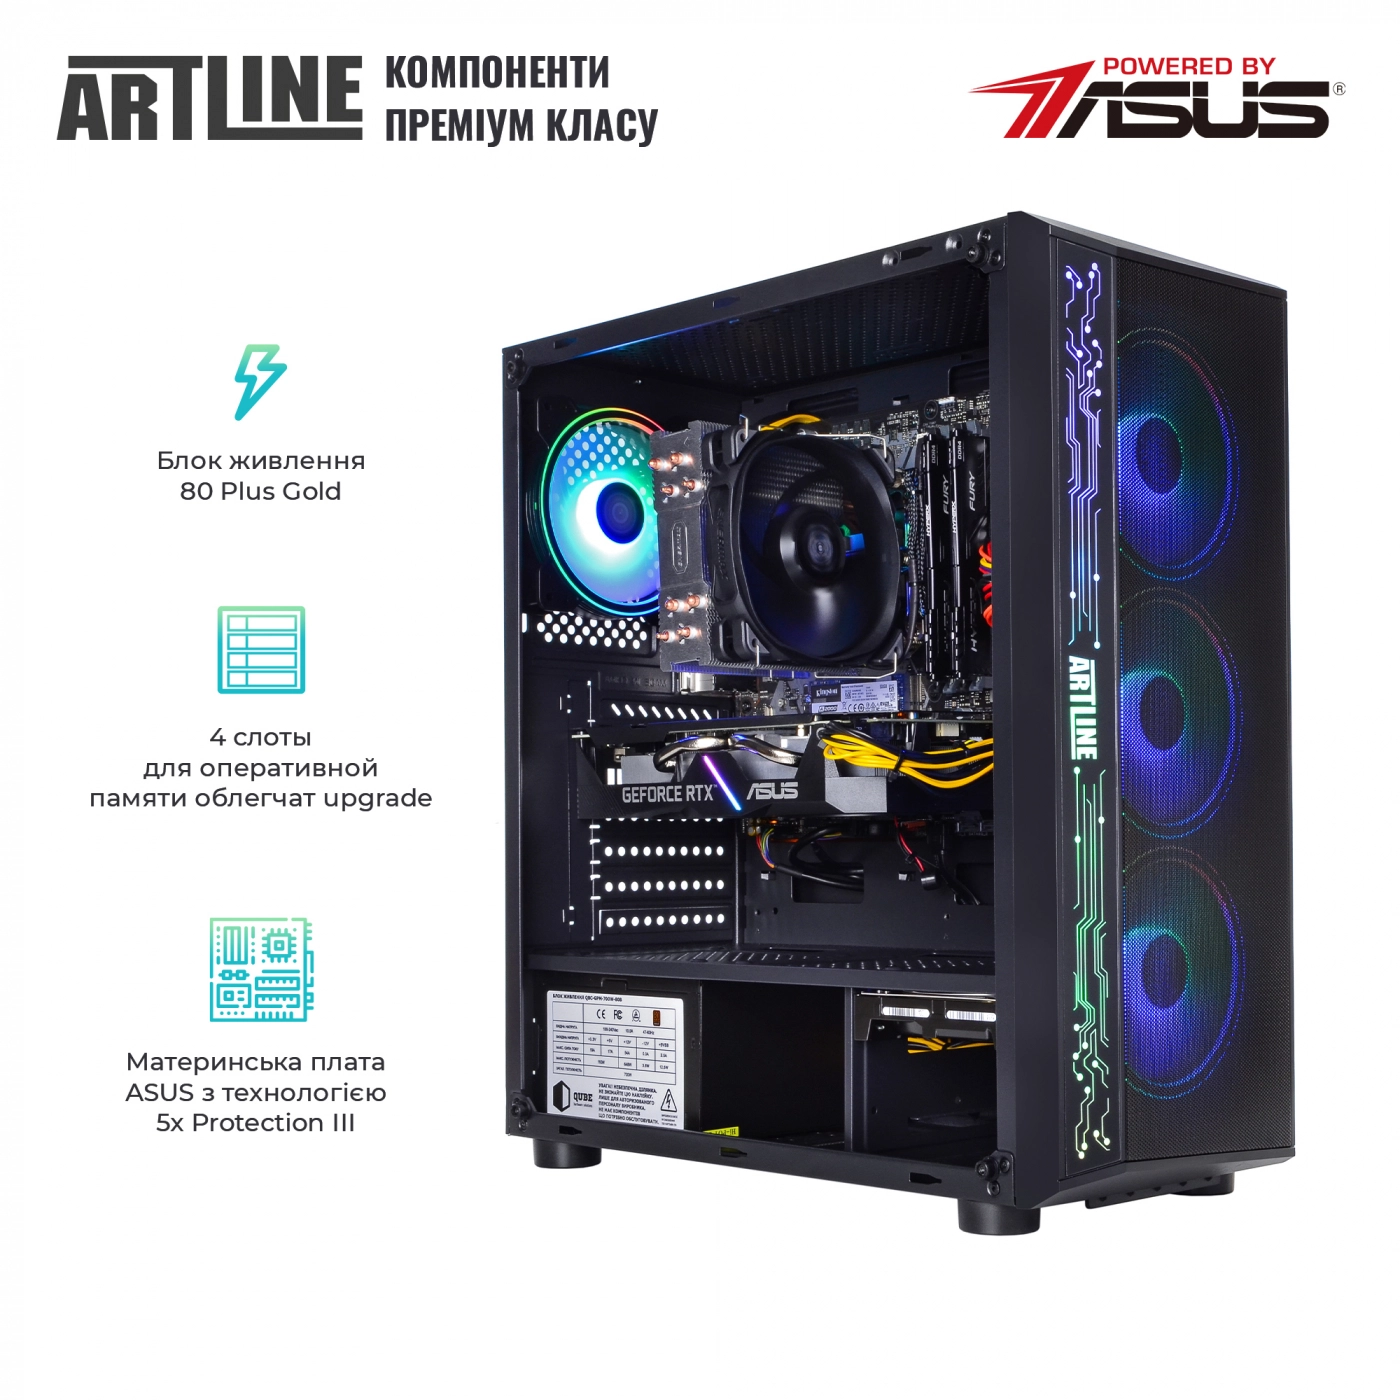 Купить Компьютер ARTLINE Gaming X77v44 - фото 3